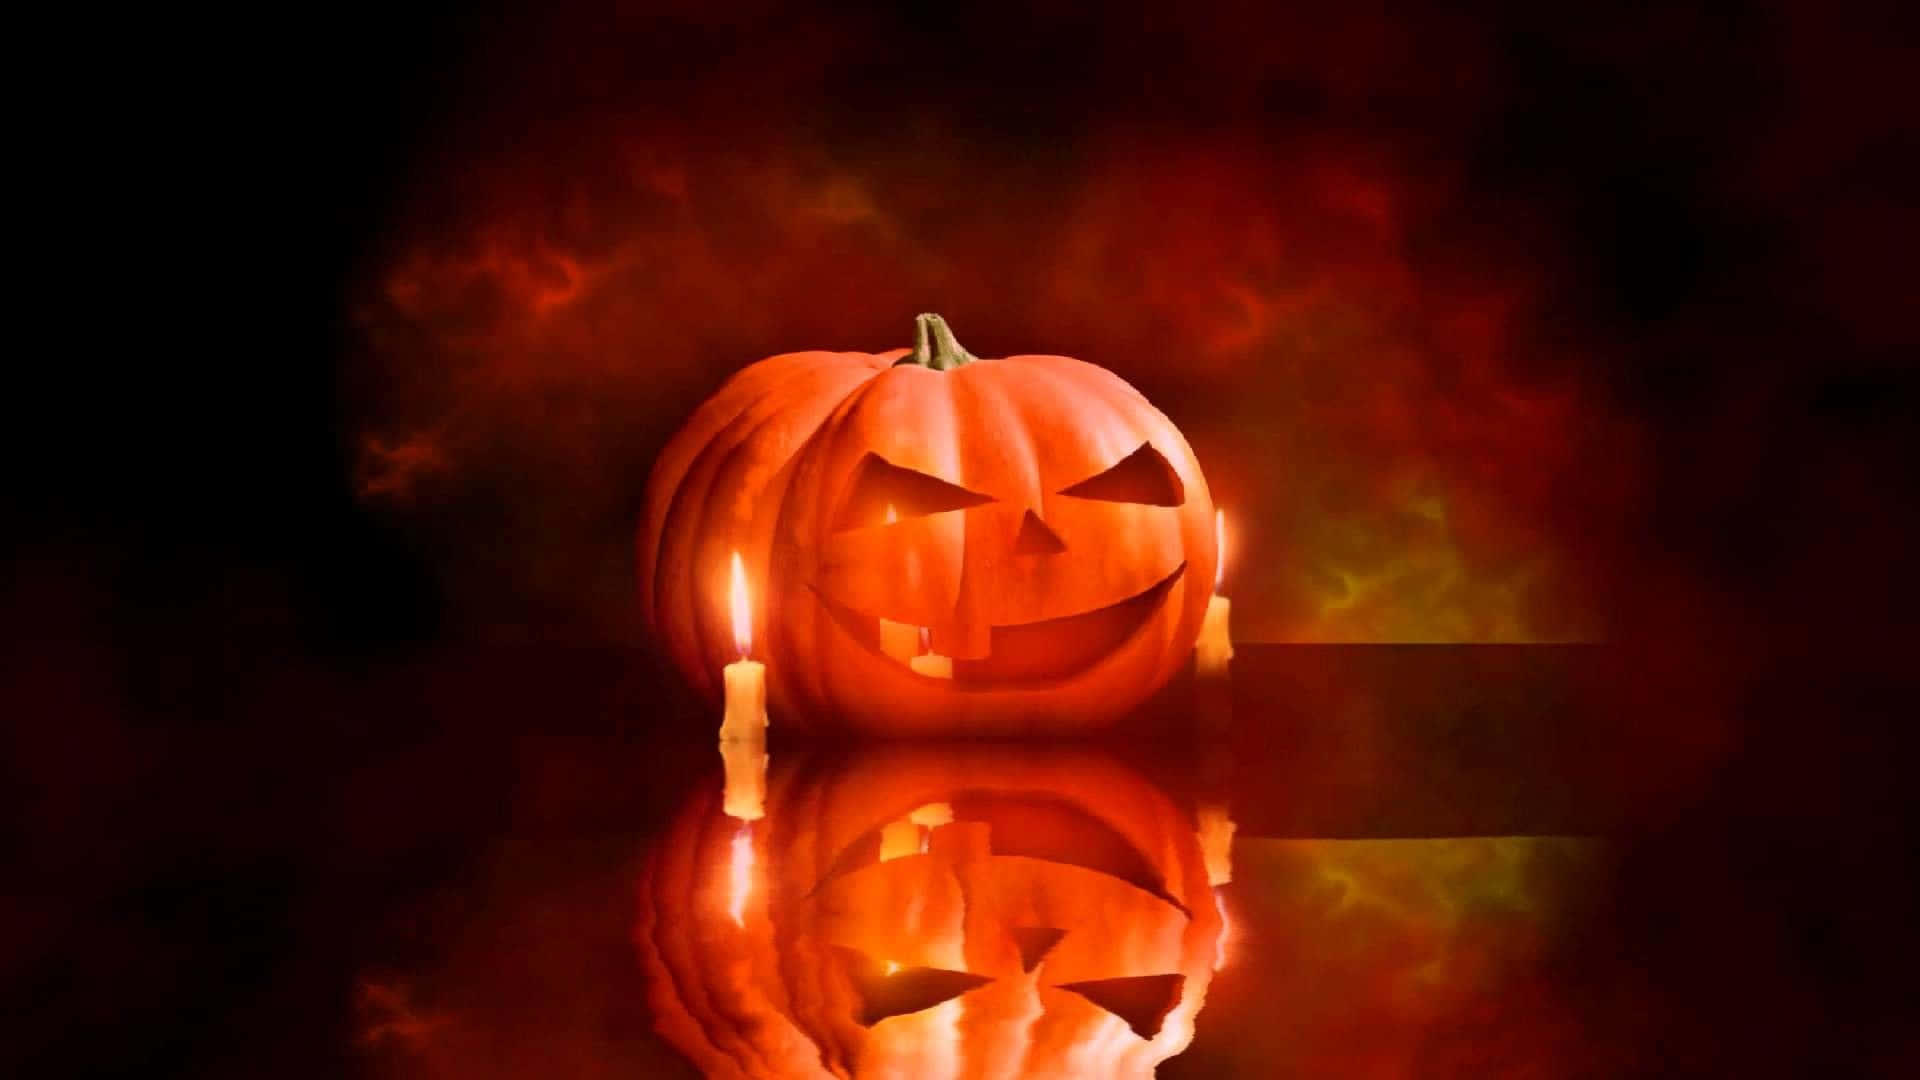 Bliv forskræmt denne sæson med dette skræmmende animerede halloween scene! Wallpaper